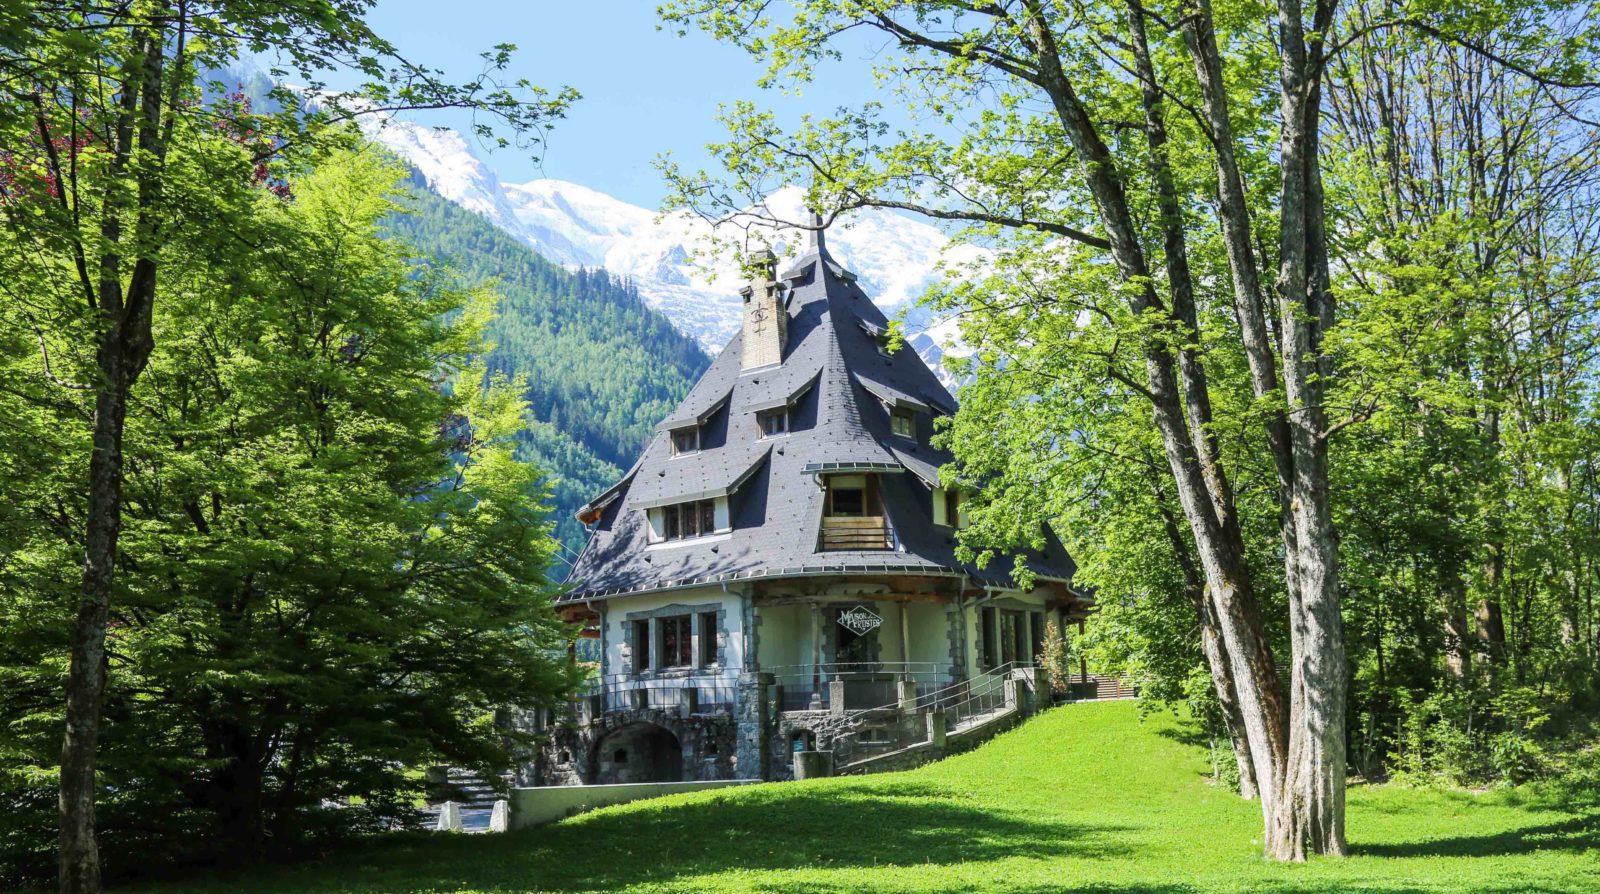 Chamonix villa de La Tournette maison des artistes